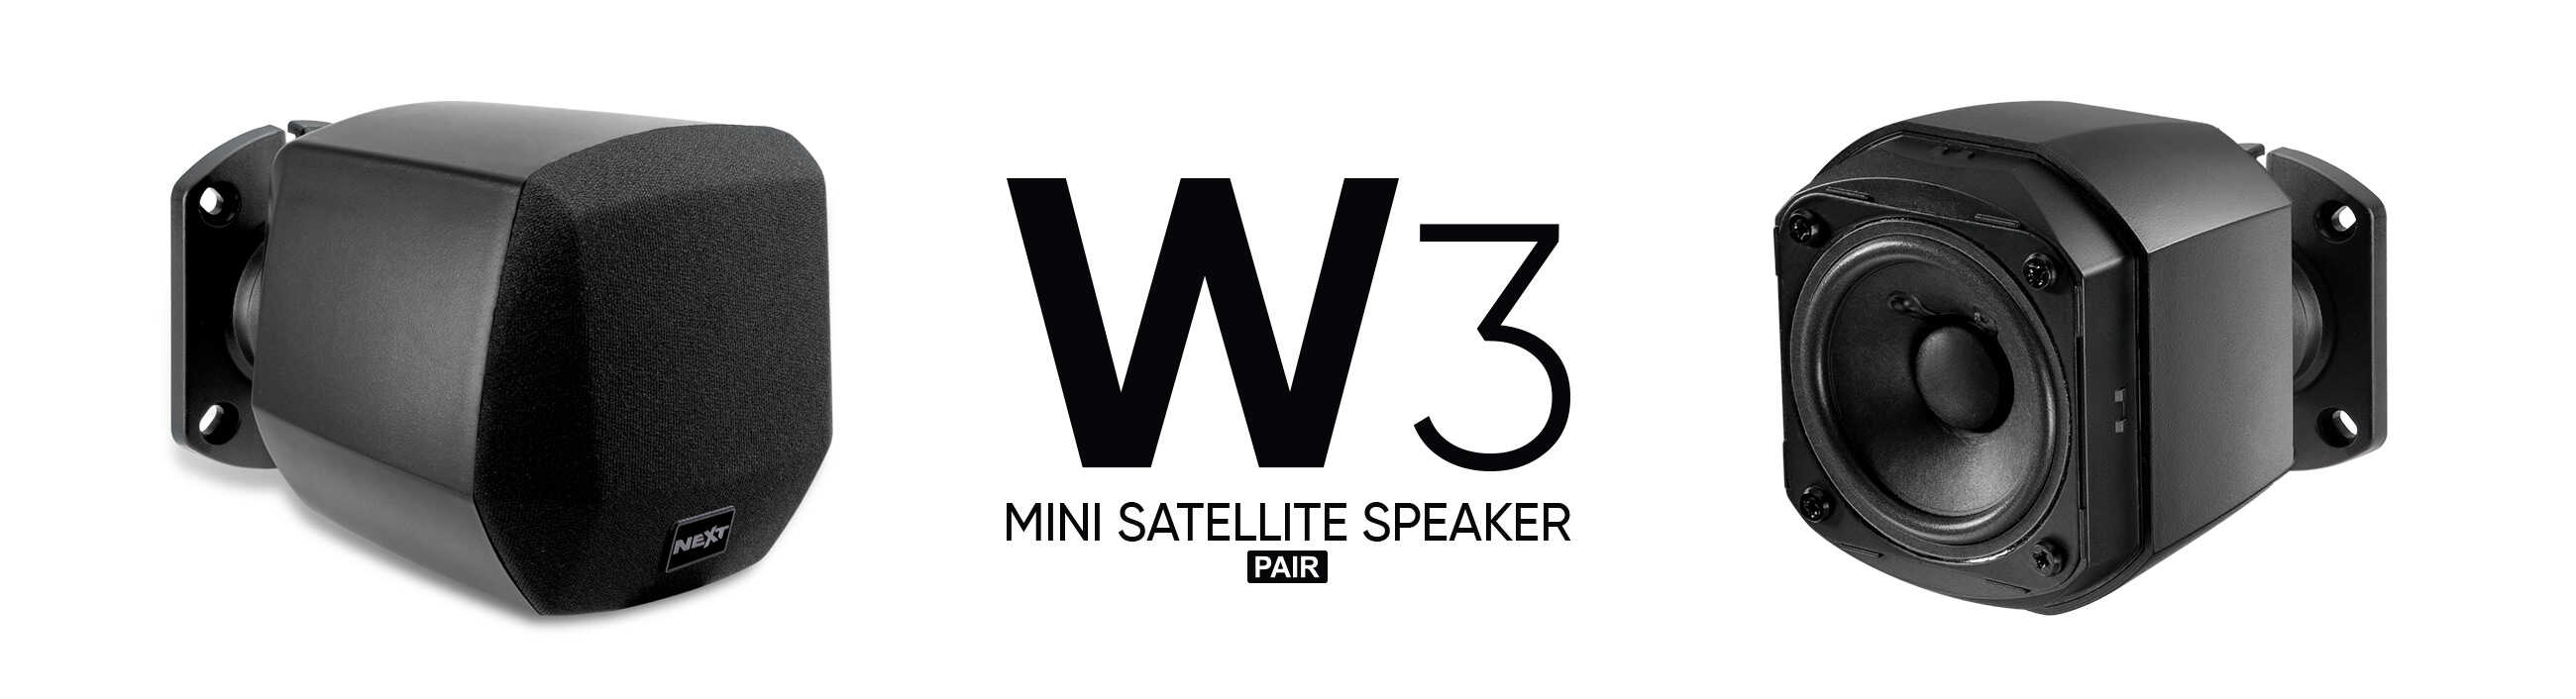 NEXT-Audiocom-w3-mini-satellite-speaker